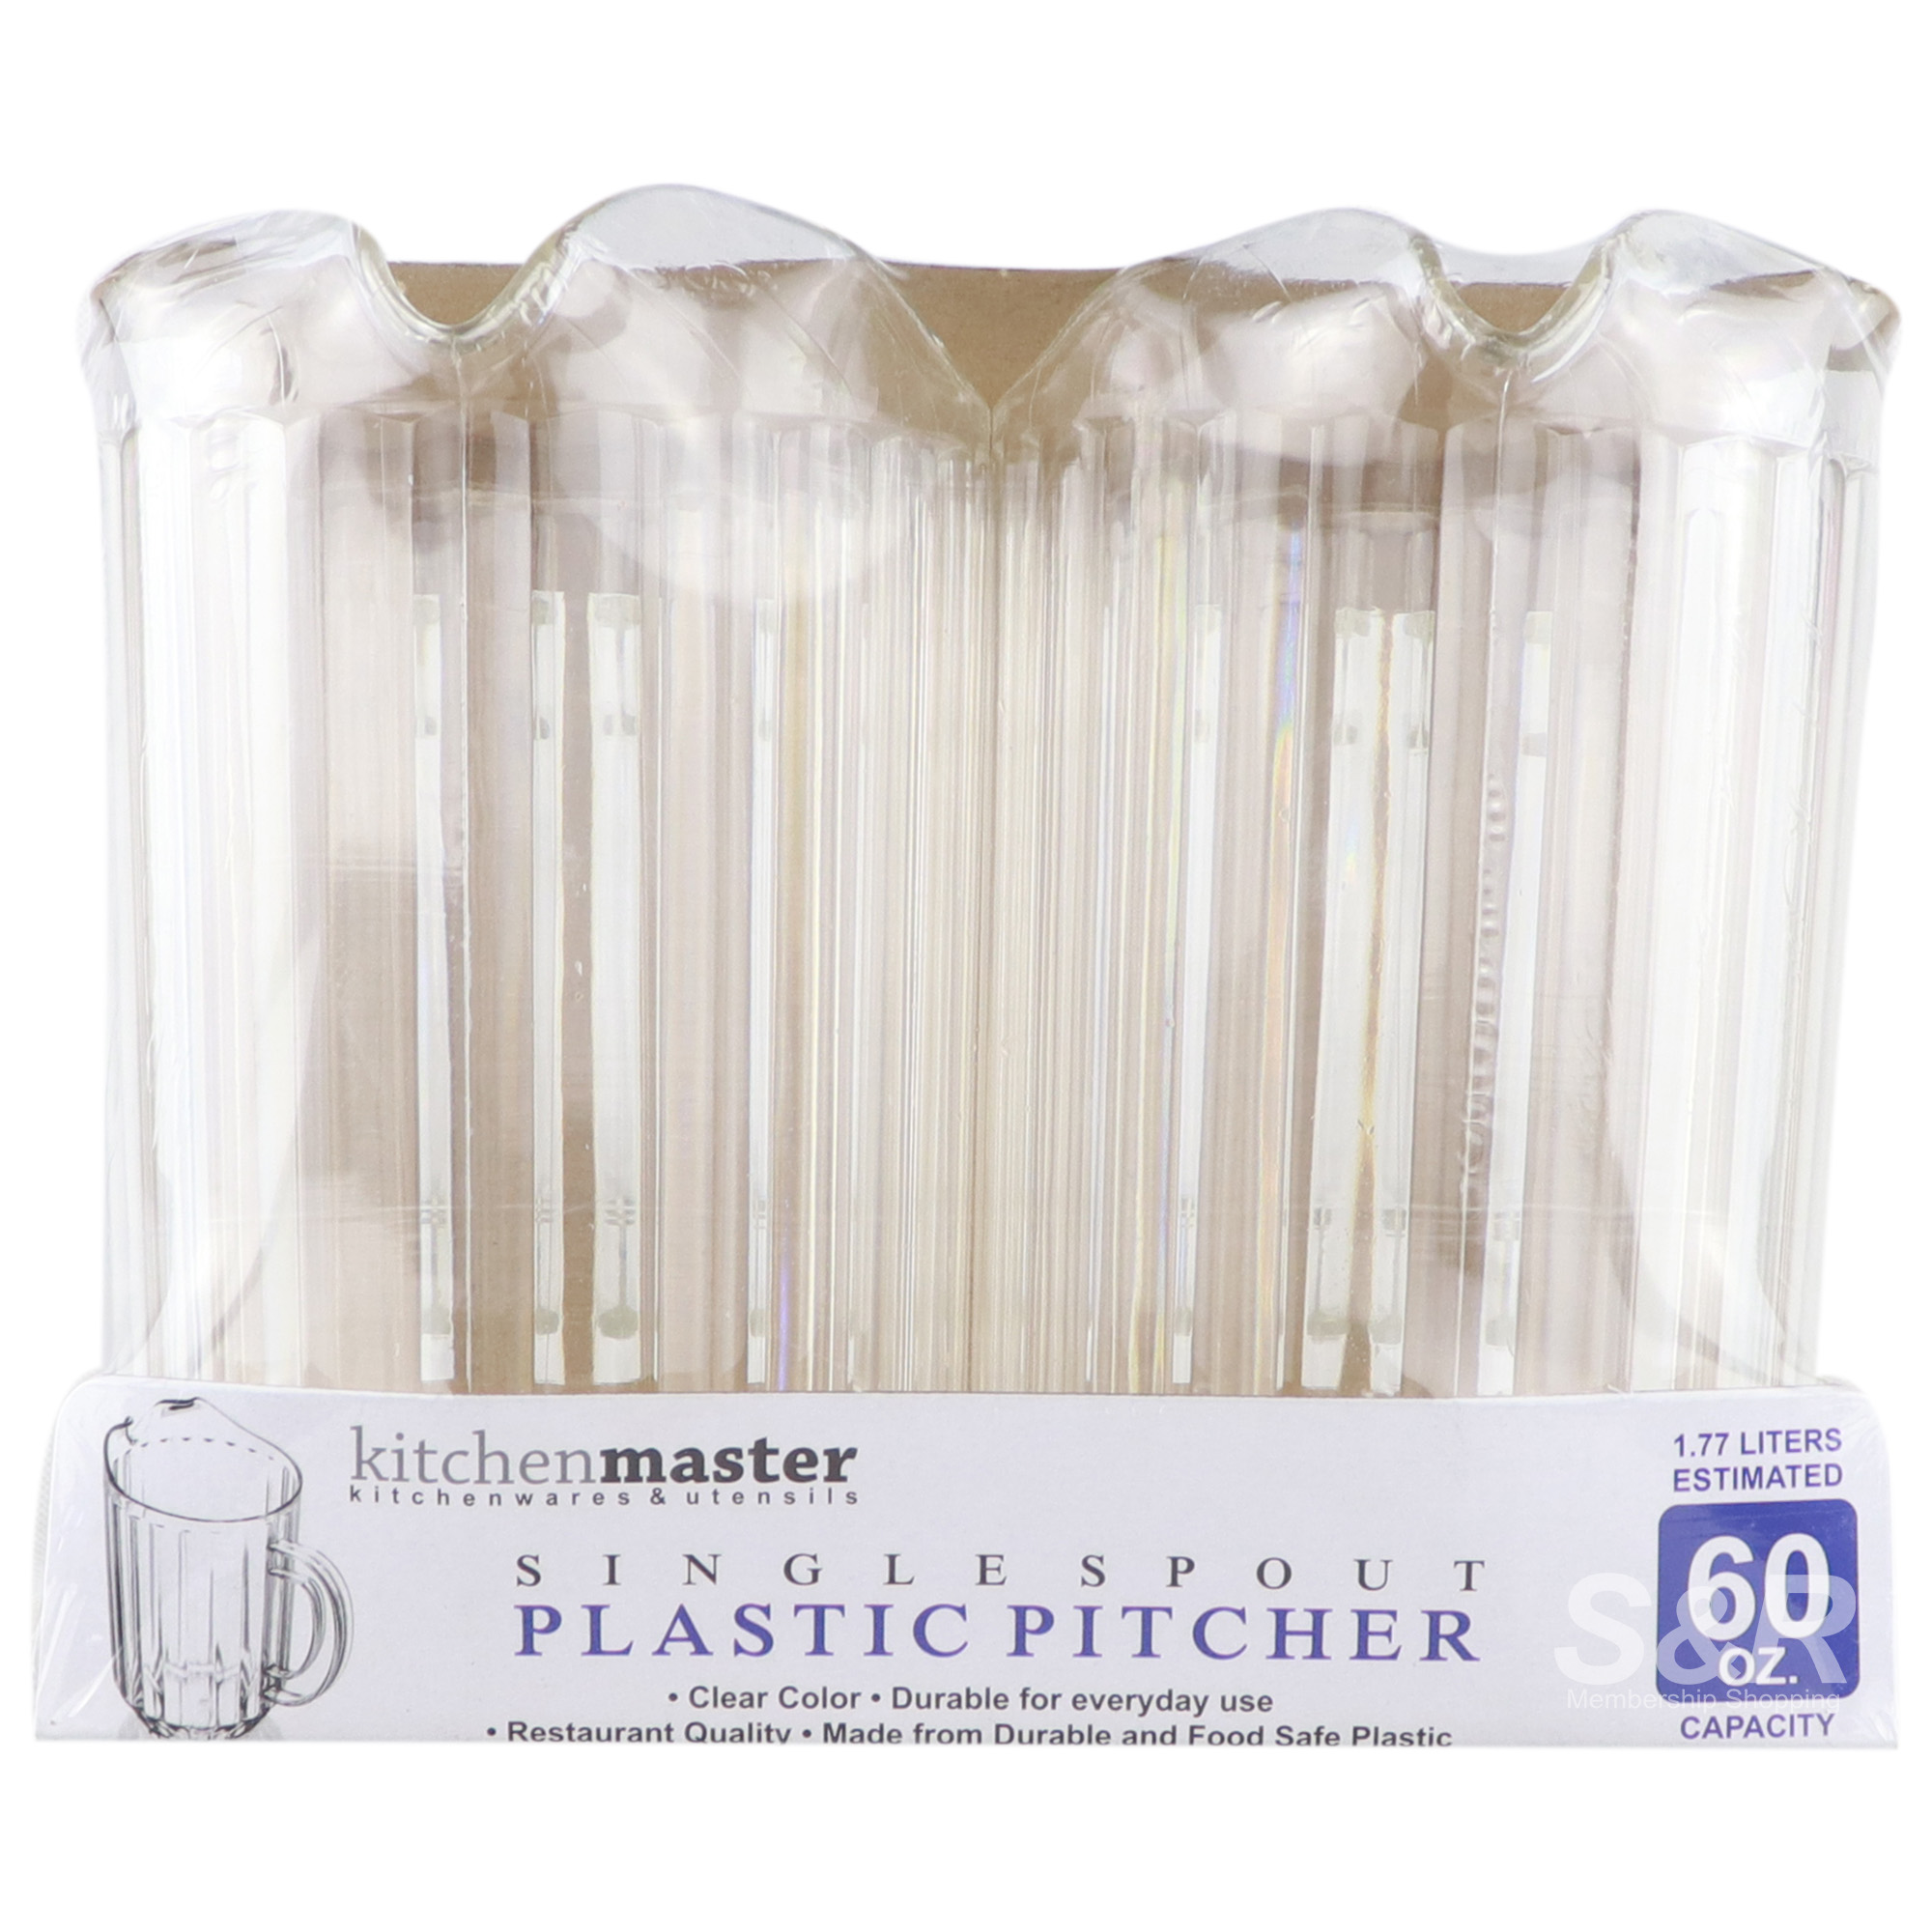 Kitchen Master Plastic Pitcher Single Spout Clear 2pcs